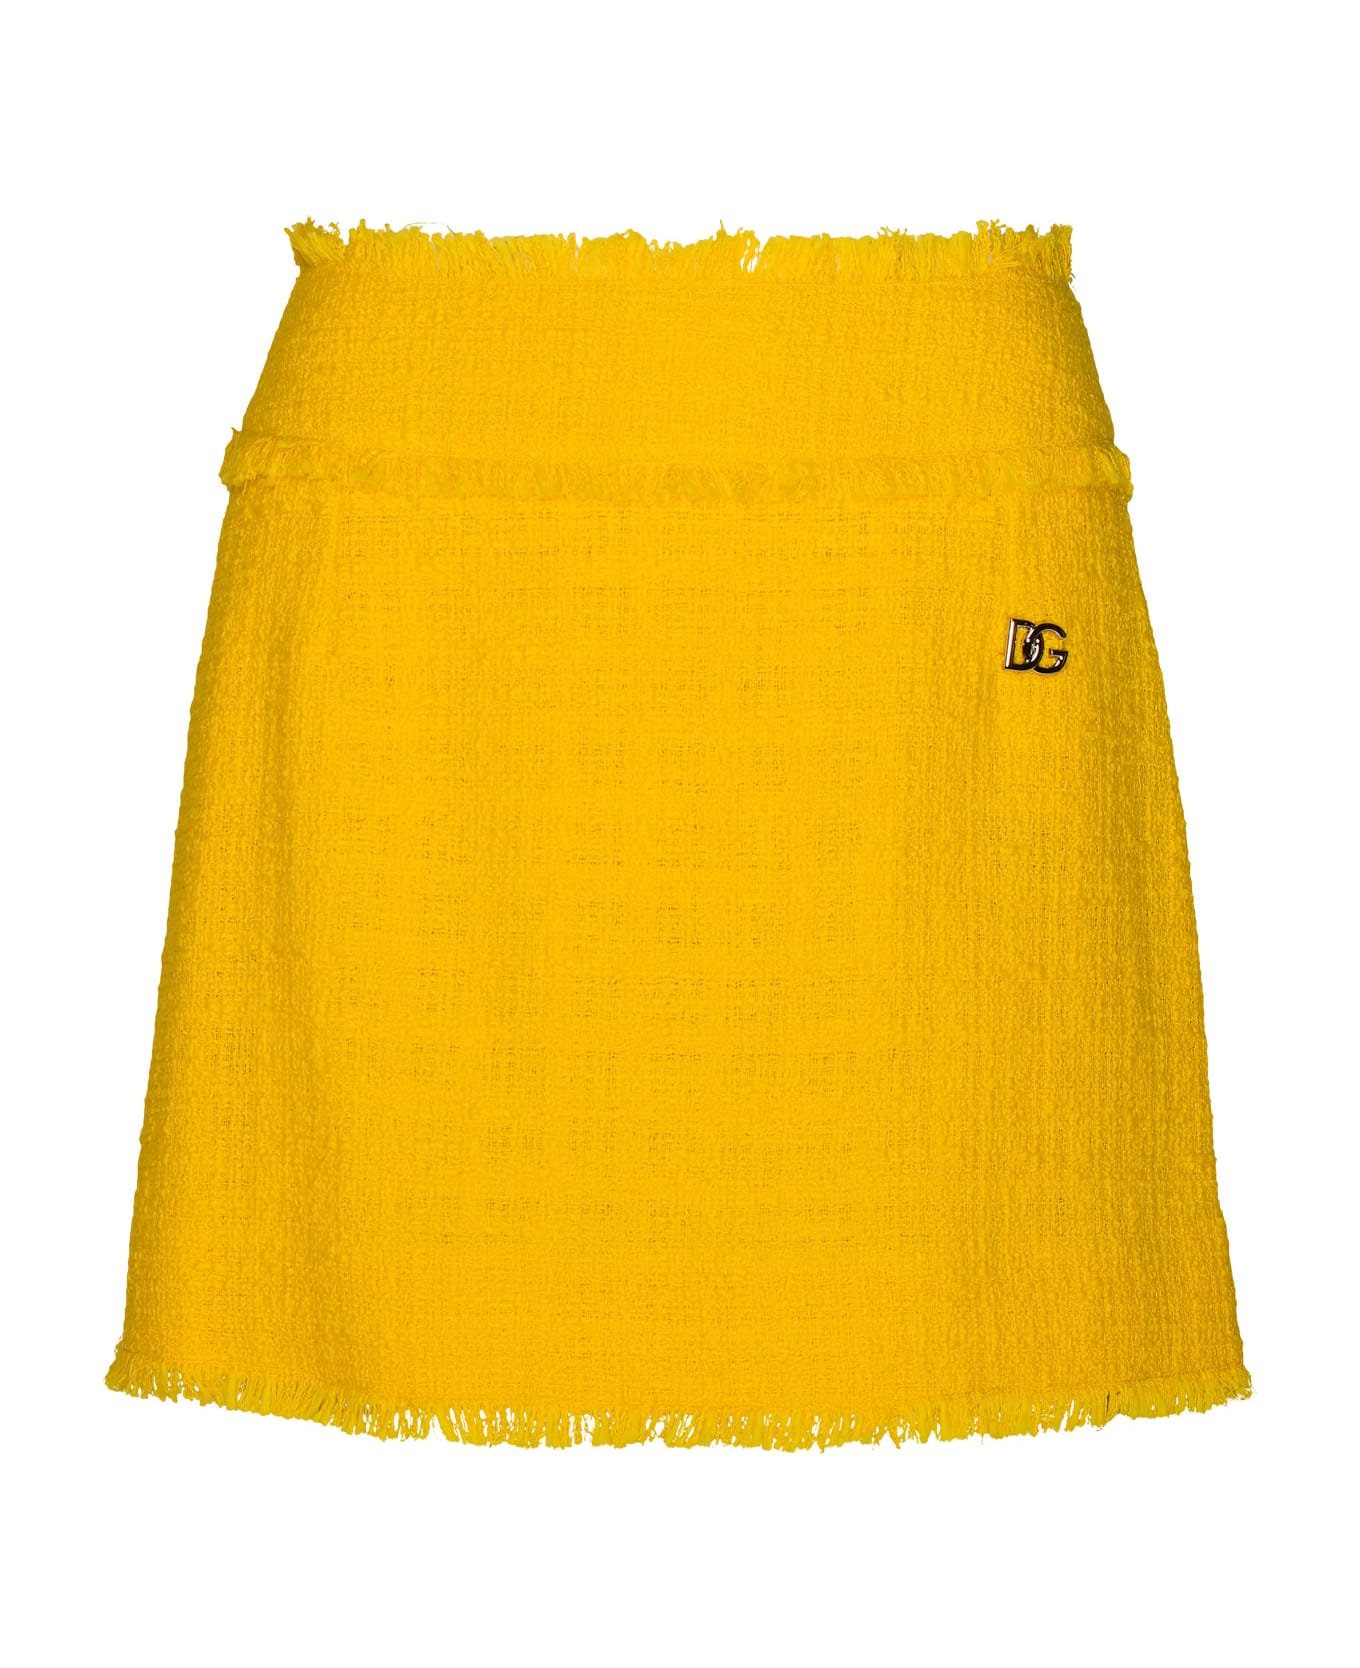 Dolce & Gabbana Yellow Cotton Blend Miniskirt - Yellow スカート